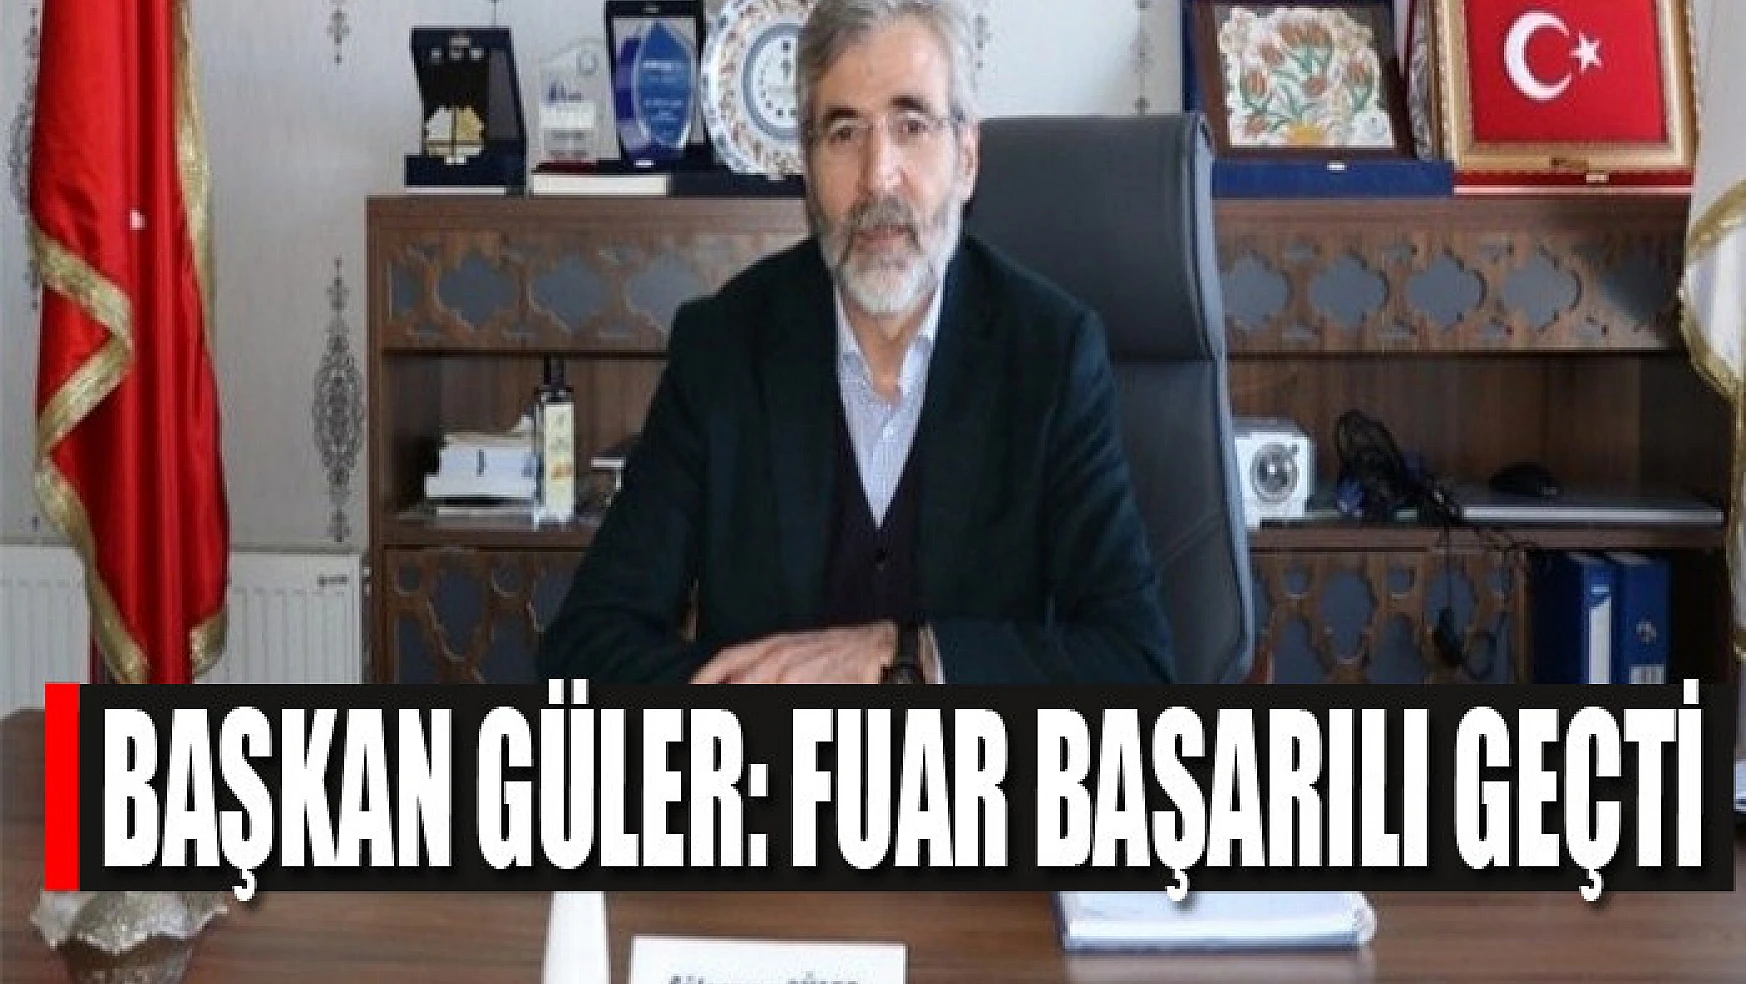 Başkan Güler: Fuar başarılı geçti